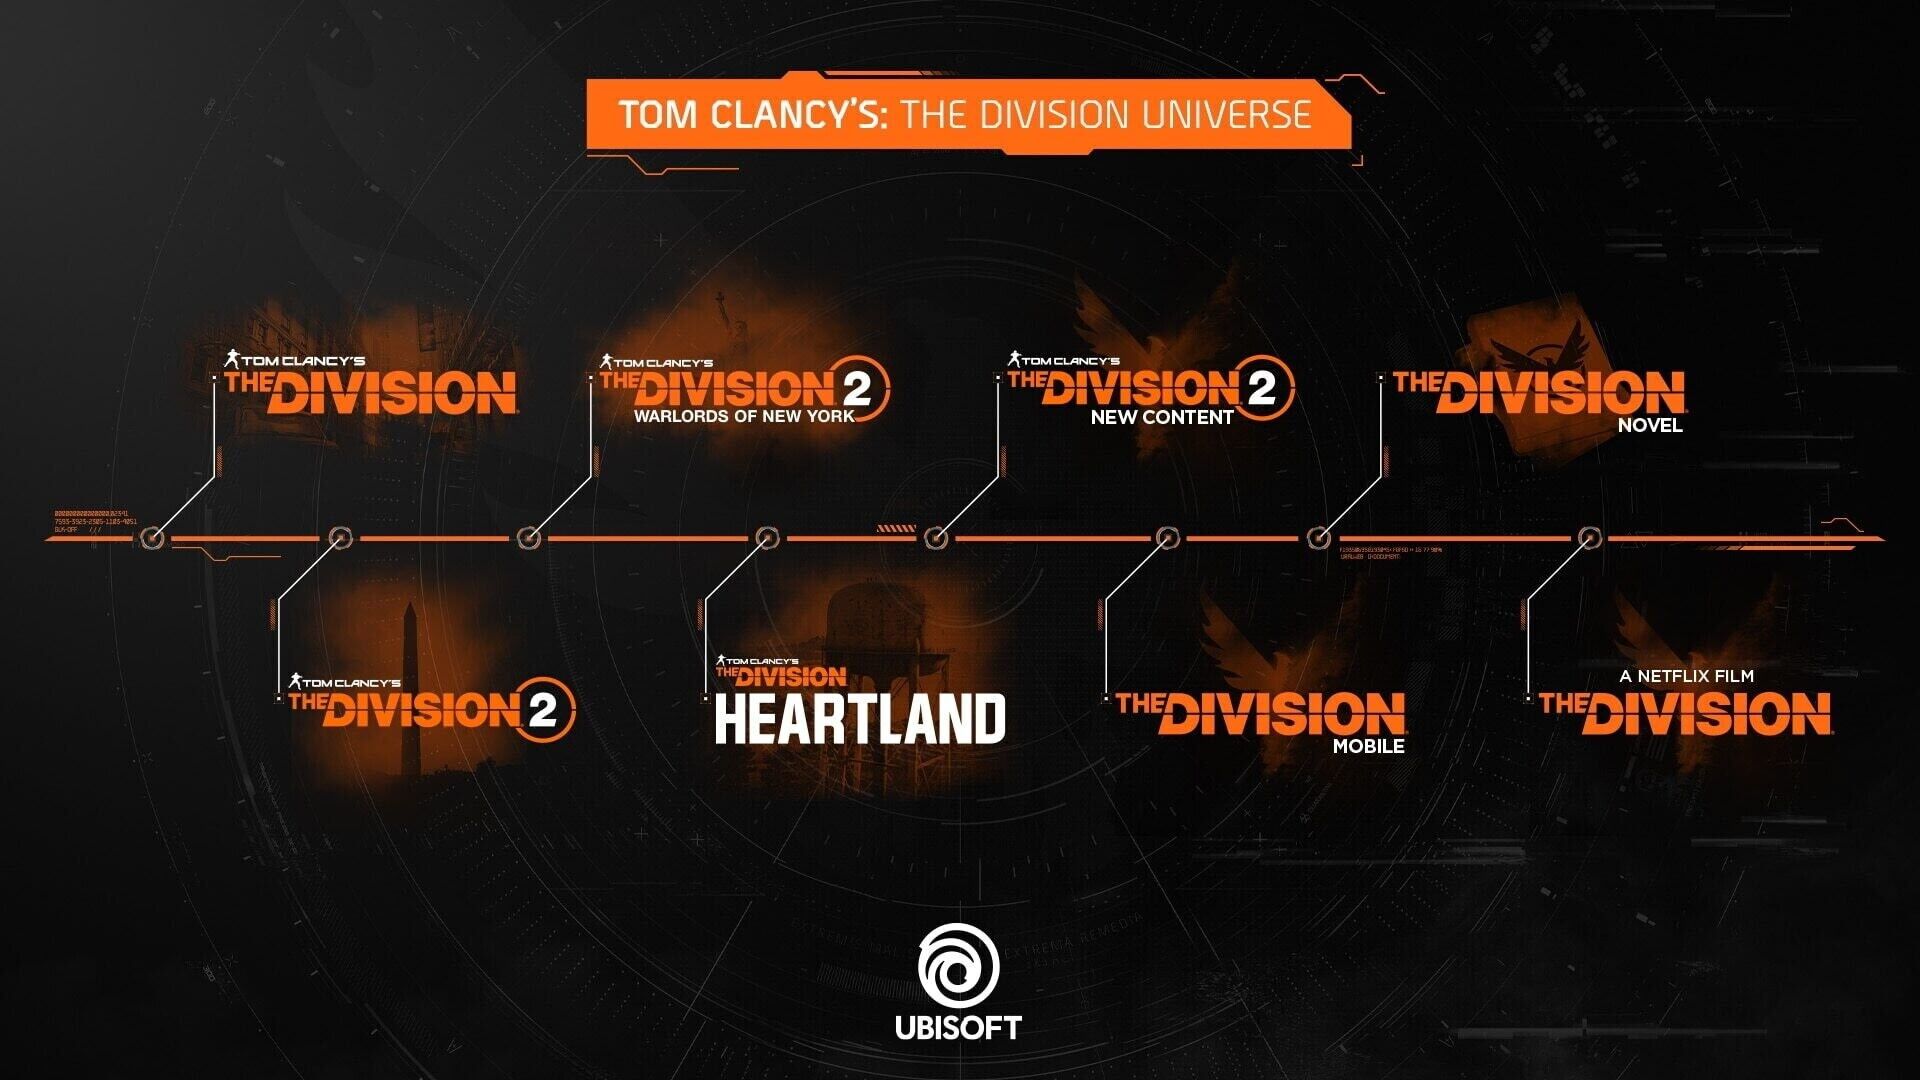 Планы по развитию серии The Division.
Источник: Ubisoft